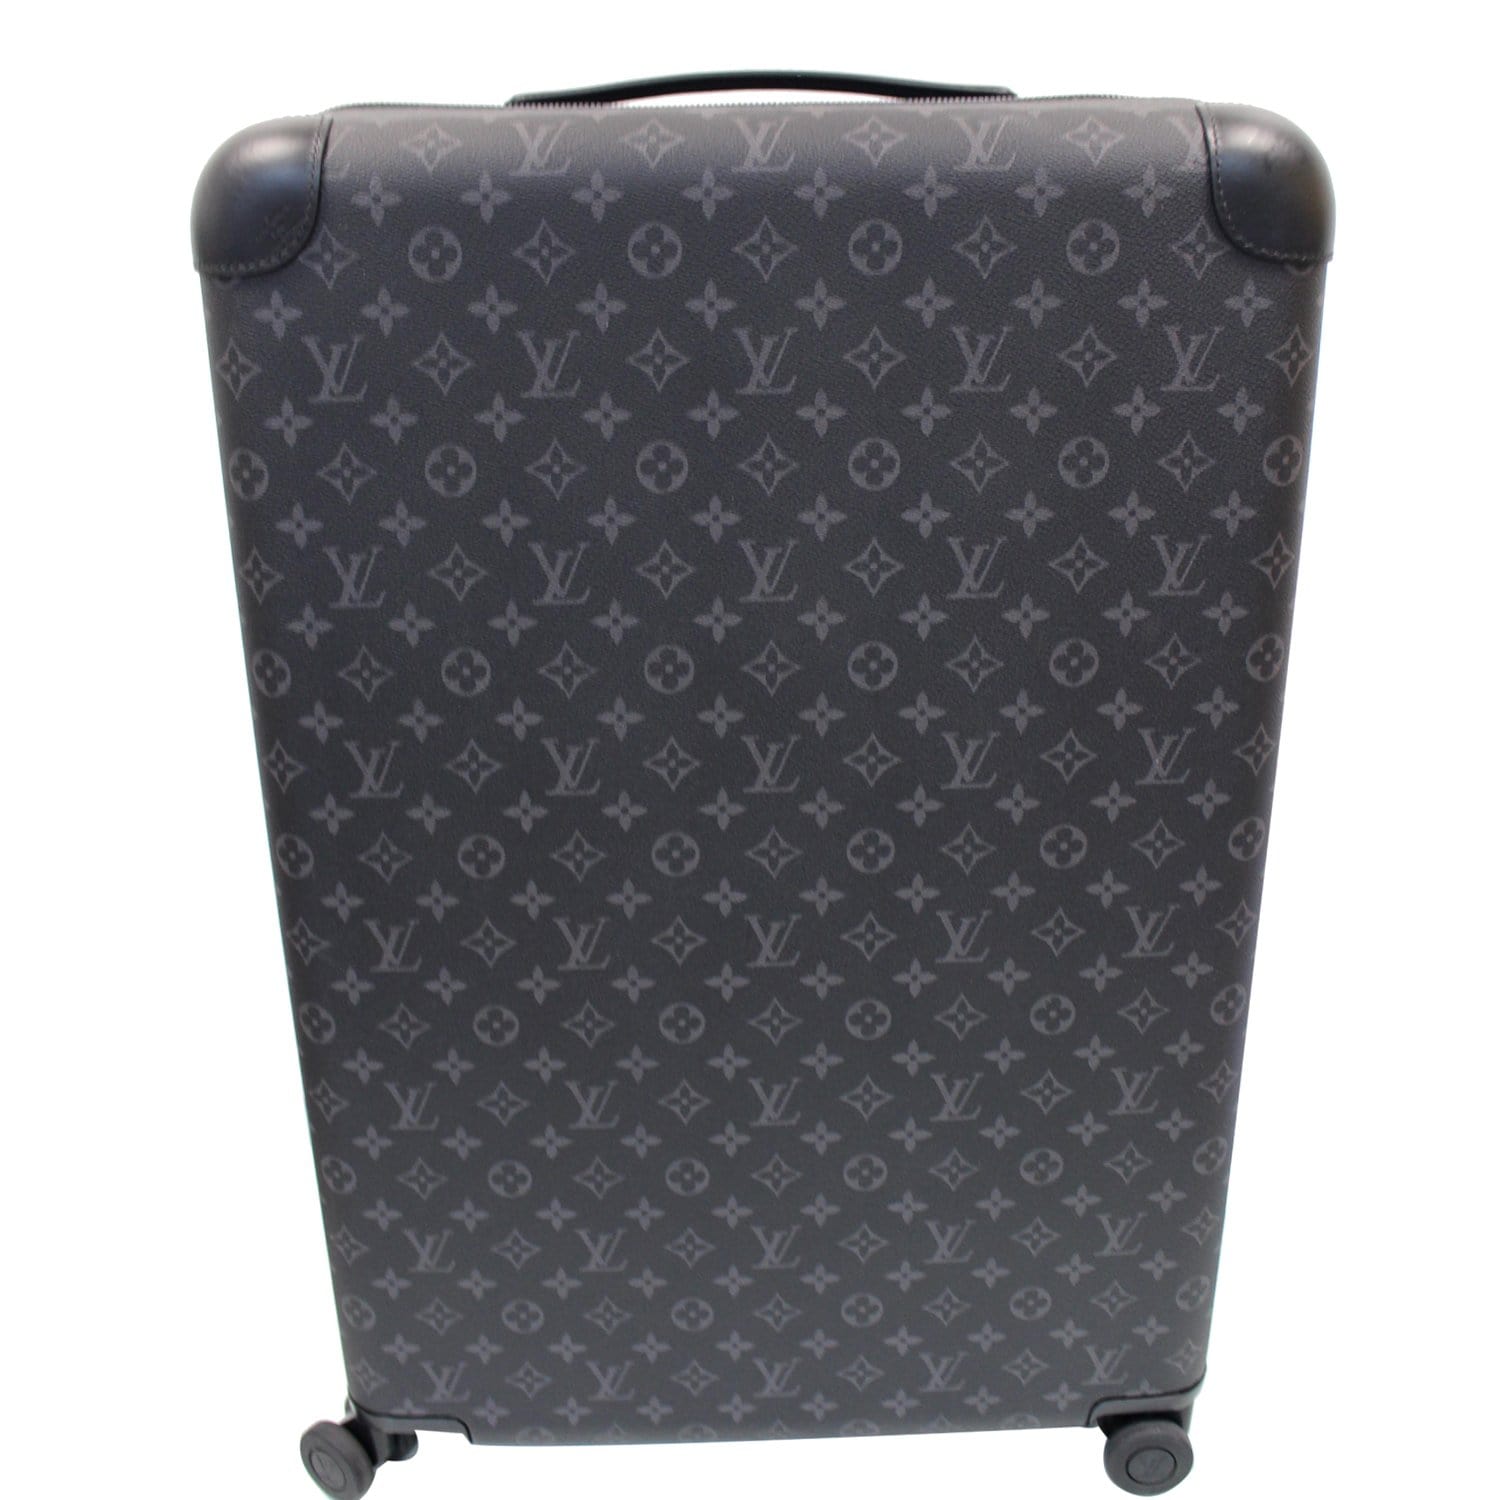 Louis Vuitton Horizon 70 Designer Roller Luggage for Sale in Phoenix, AZ -  OfferUp